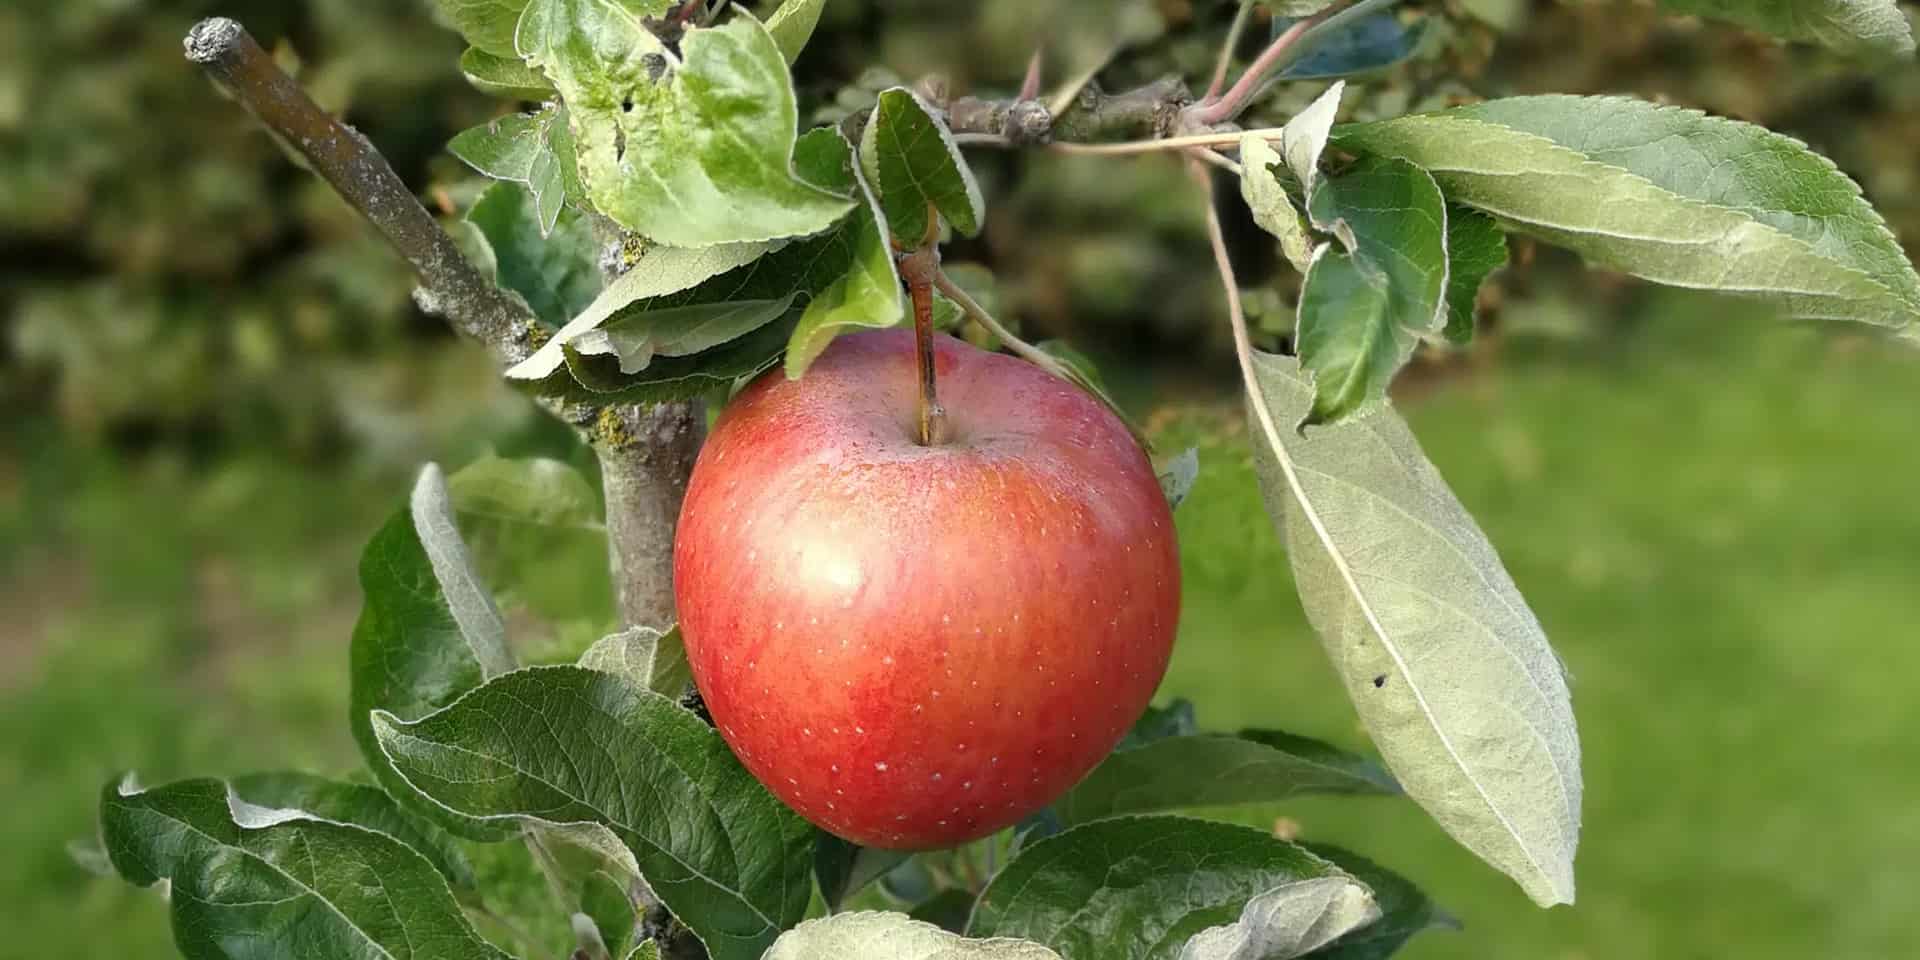 The apple in Kivik